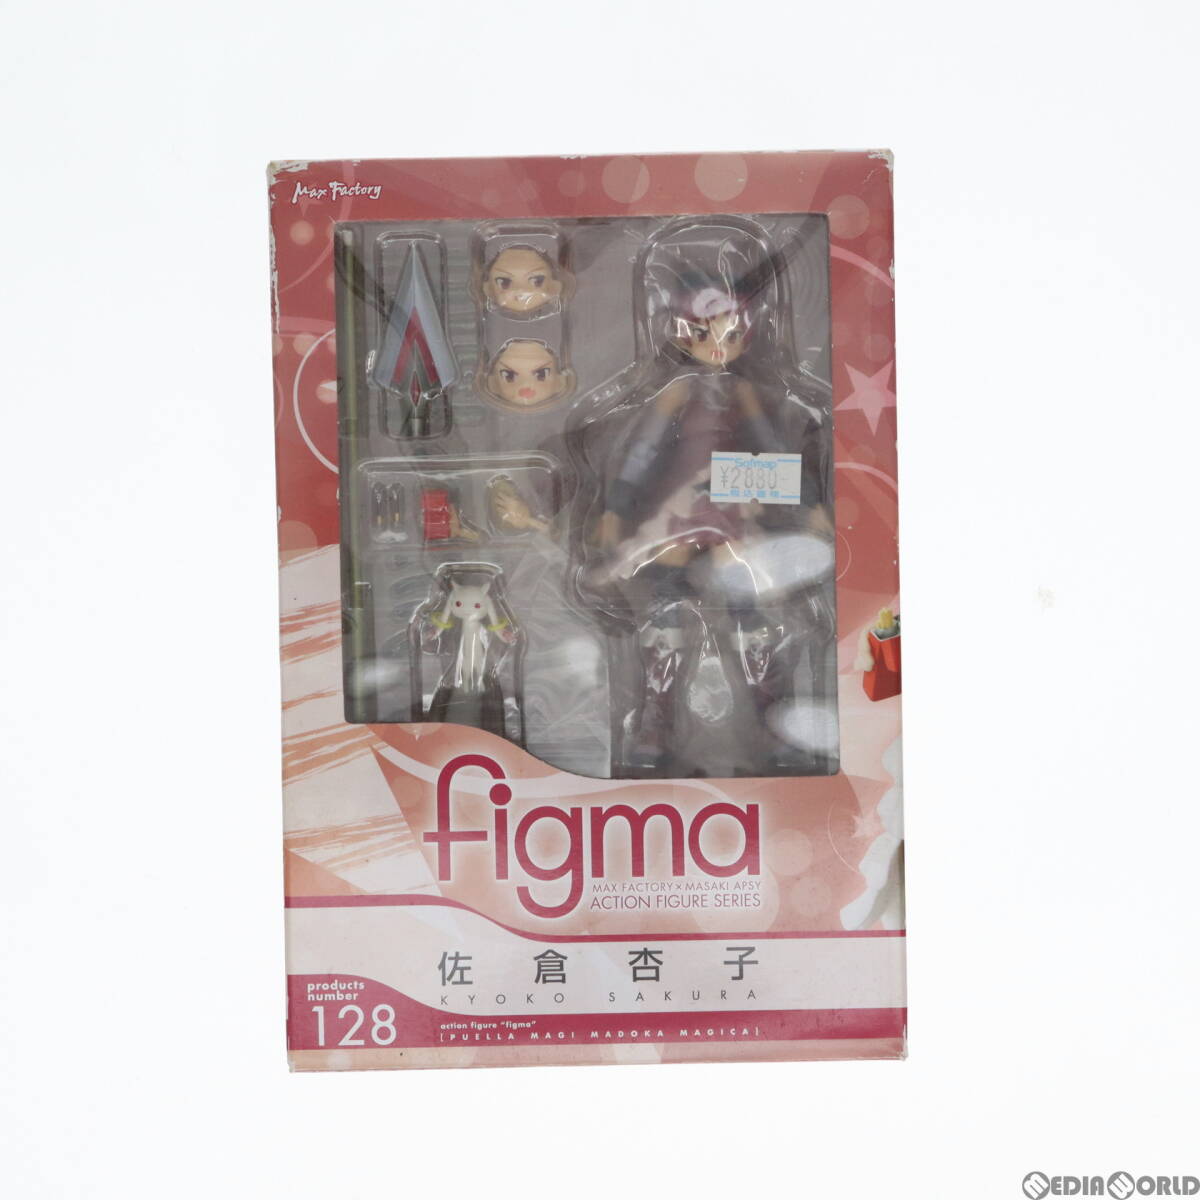 [ б/у ][FIG]figma(figma) 128 Сакура абрикос ( Sakura ....) магия девушка ...* Magi ka конечный продукт передвижной фигурка Max Factory (611469